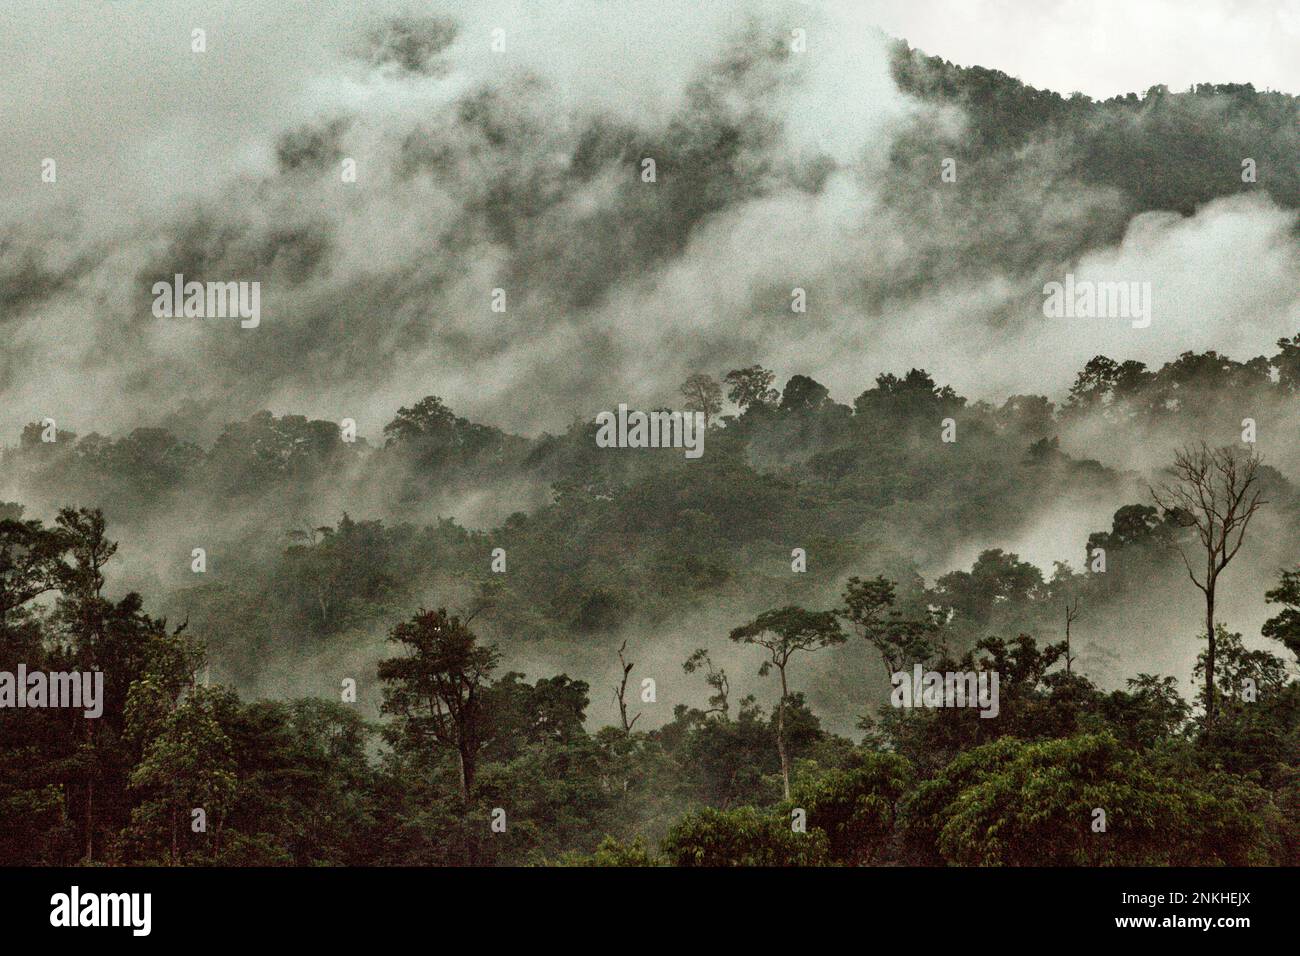 Los bosques de la tierra, actualmente alrededor de 4 mil millones de hectáreas en total, siguen siendo un sumidero neto de dióxido de carbono, que colectivamente emiten 8,1 mil millones de toneladas métricas de carbono cada año y absorben 16 mil millones de toneladas métricas, según Jennifer Fergesen en su artículo publicado a tiempo el 18 de octubre de 2022. Las selvas tropicales del sudeste asiático son uno de los tres sistemas más grandes del mundo que son los pulmones de la tierra, junto con el Amazonas y la cuenca del río Congo. Sin embargo, escribió, la selva tropical del sudeste asiático es ahora una fuente neta de emisiones de carbono. Foto de stock